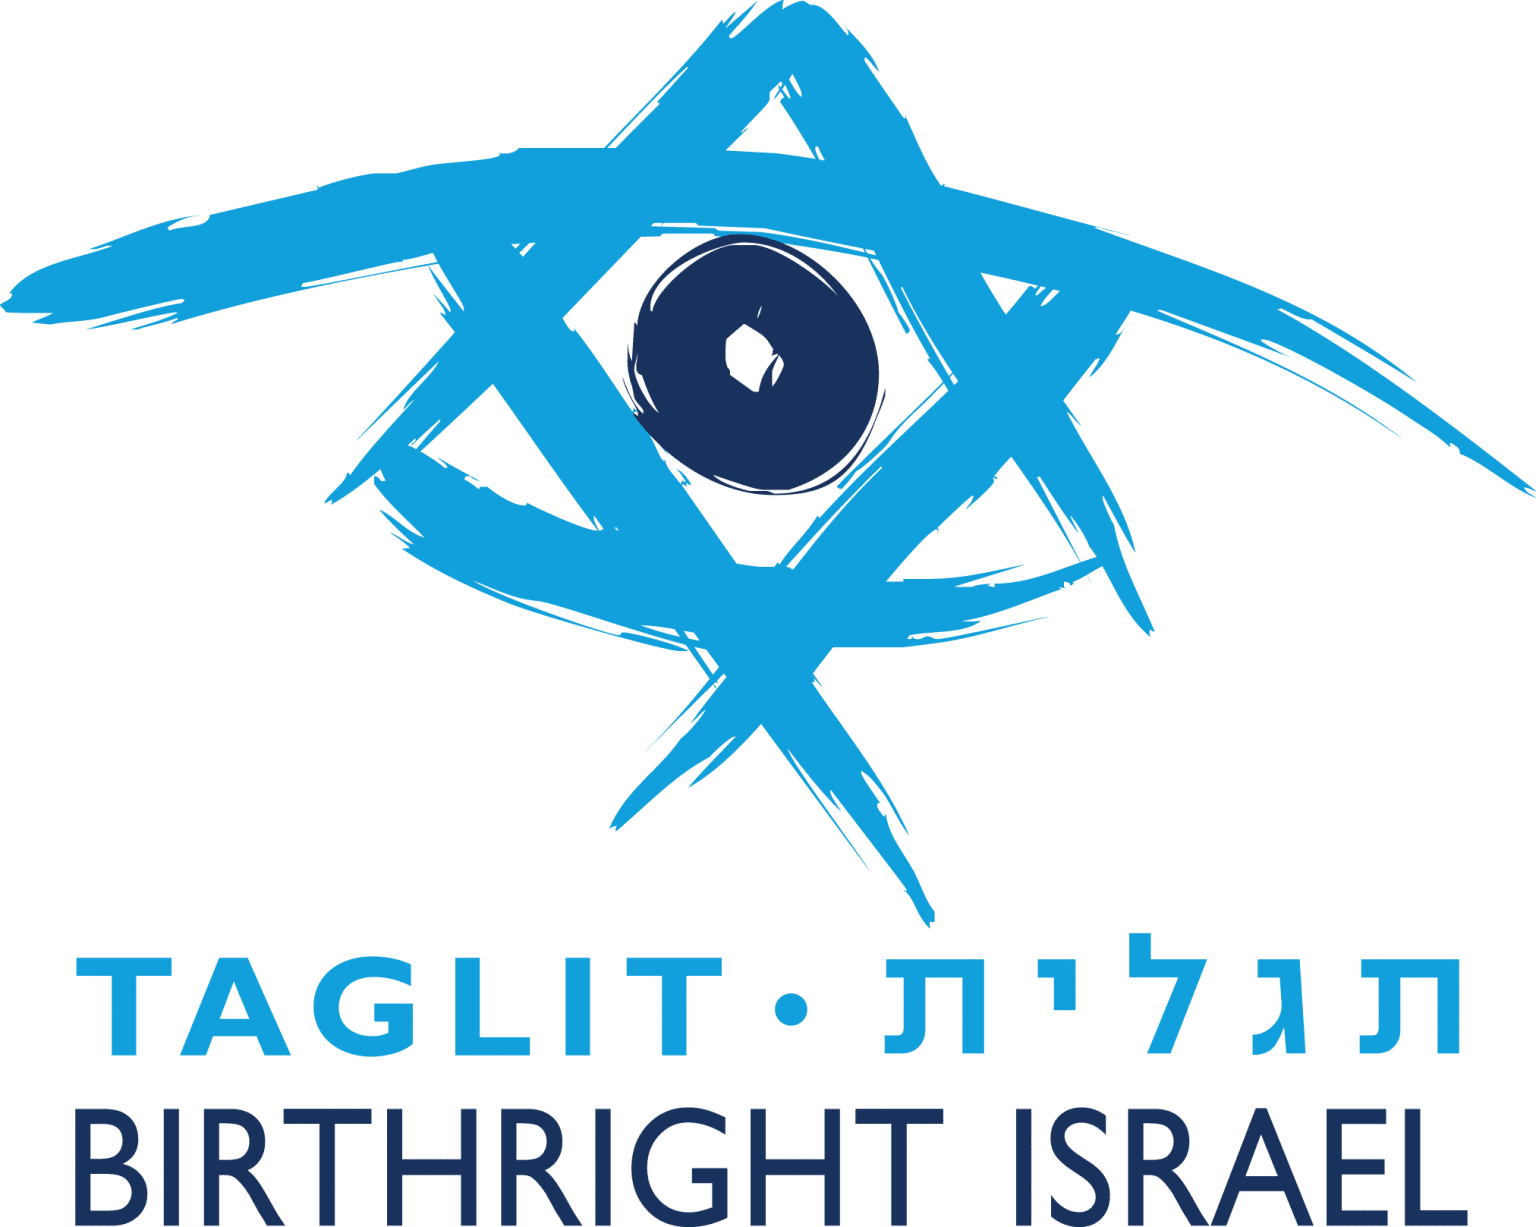 Birthright Israel Maryland Hillel